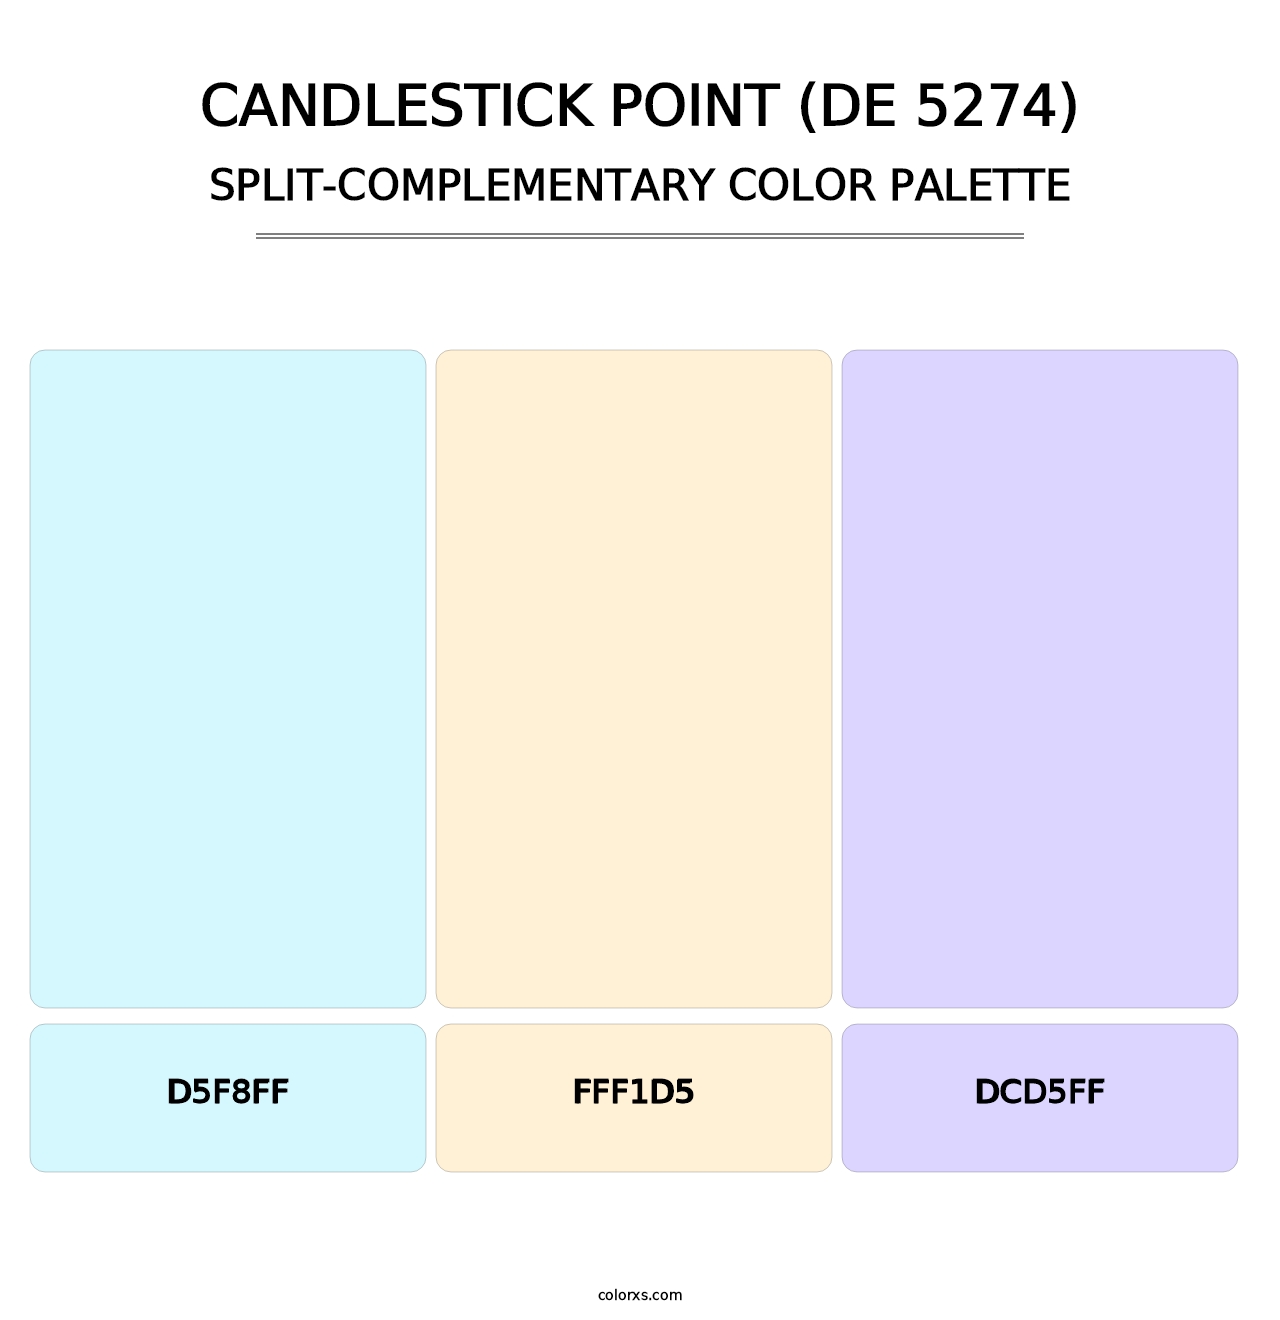 Candlestick Point (DE 5274) - Split-Complementary Color Palette